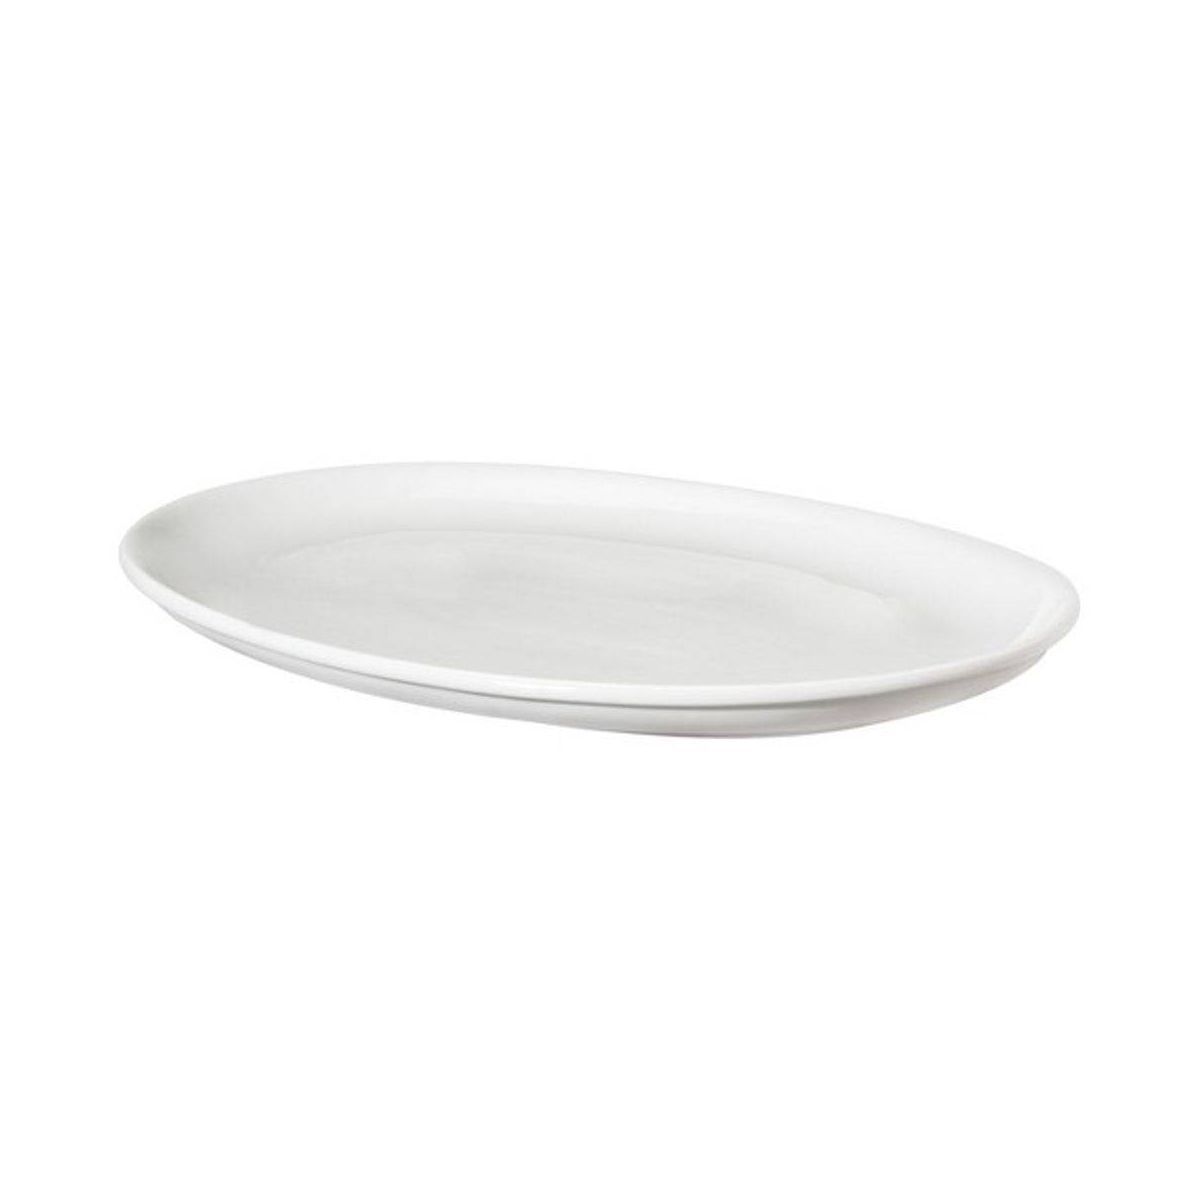 18" x 14" Porcelain Oval Serving Platter White - Threshold™ | Target